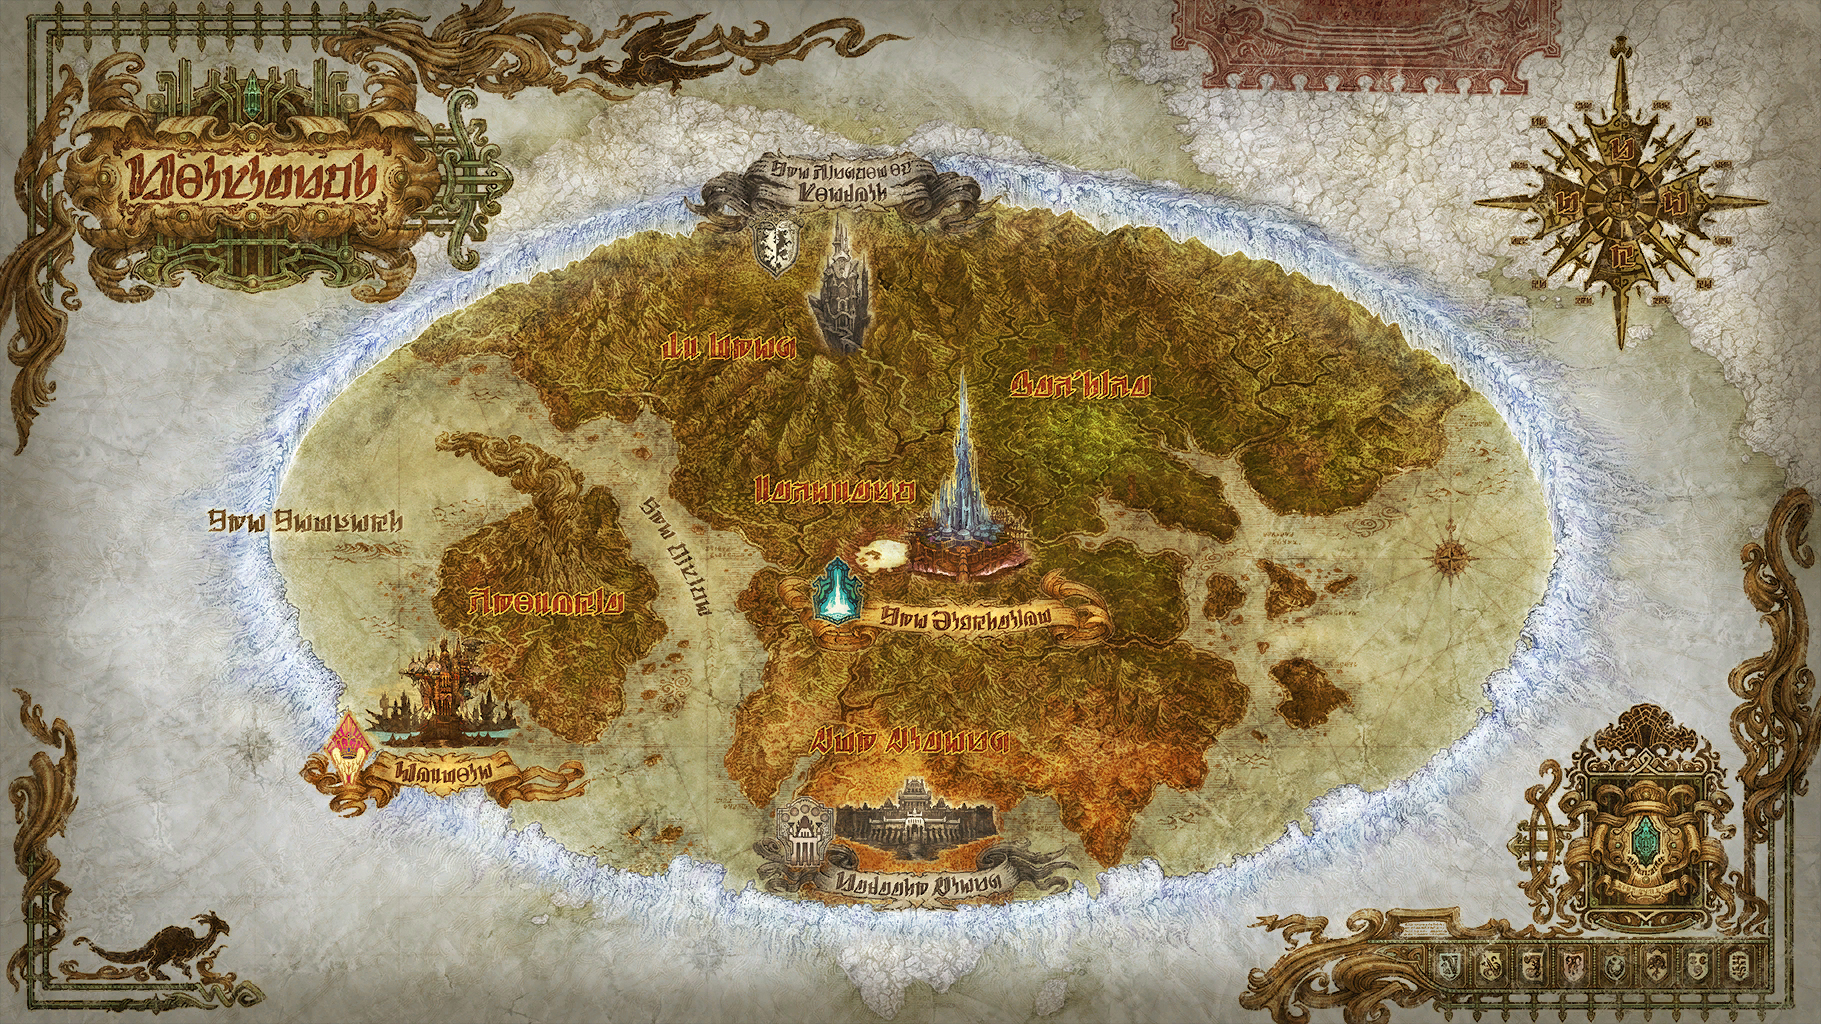 Второй и третьи фрагменты. Final Fantasy 14 карта. Final Fantasy 14 World Map. Финал фэнтези 14 Realm Reborn карта.